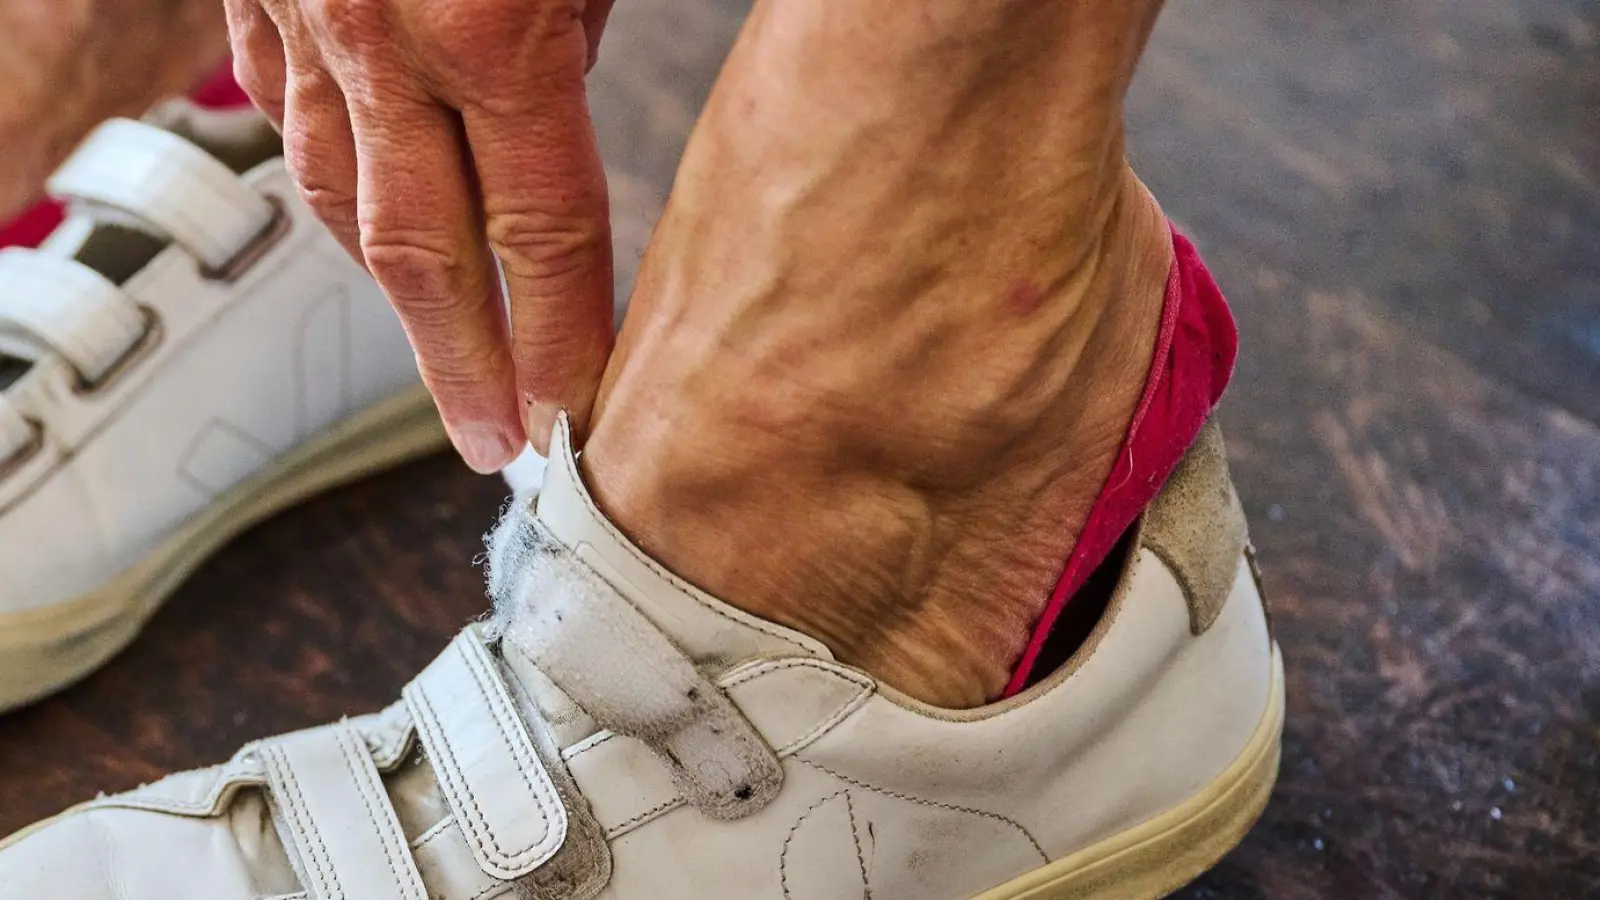 Diabetikerinnen und Diabetiker mit Nervenschäden sollten täglich ihre Füße auf Schwellungen, Rötungen oder andere Veränderungen untersuchen. (Foto: Annette Riedl/dpa/dpa-tmn)